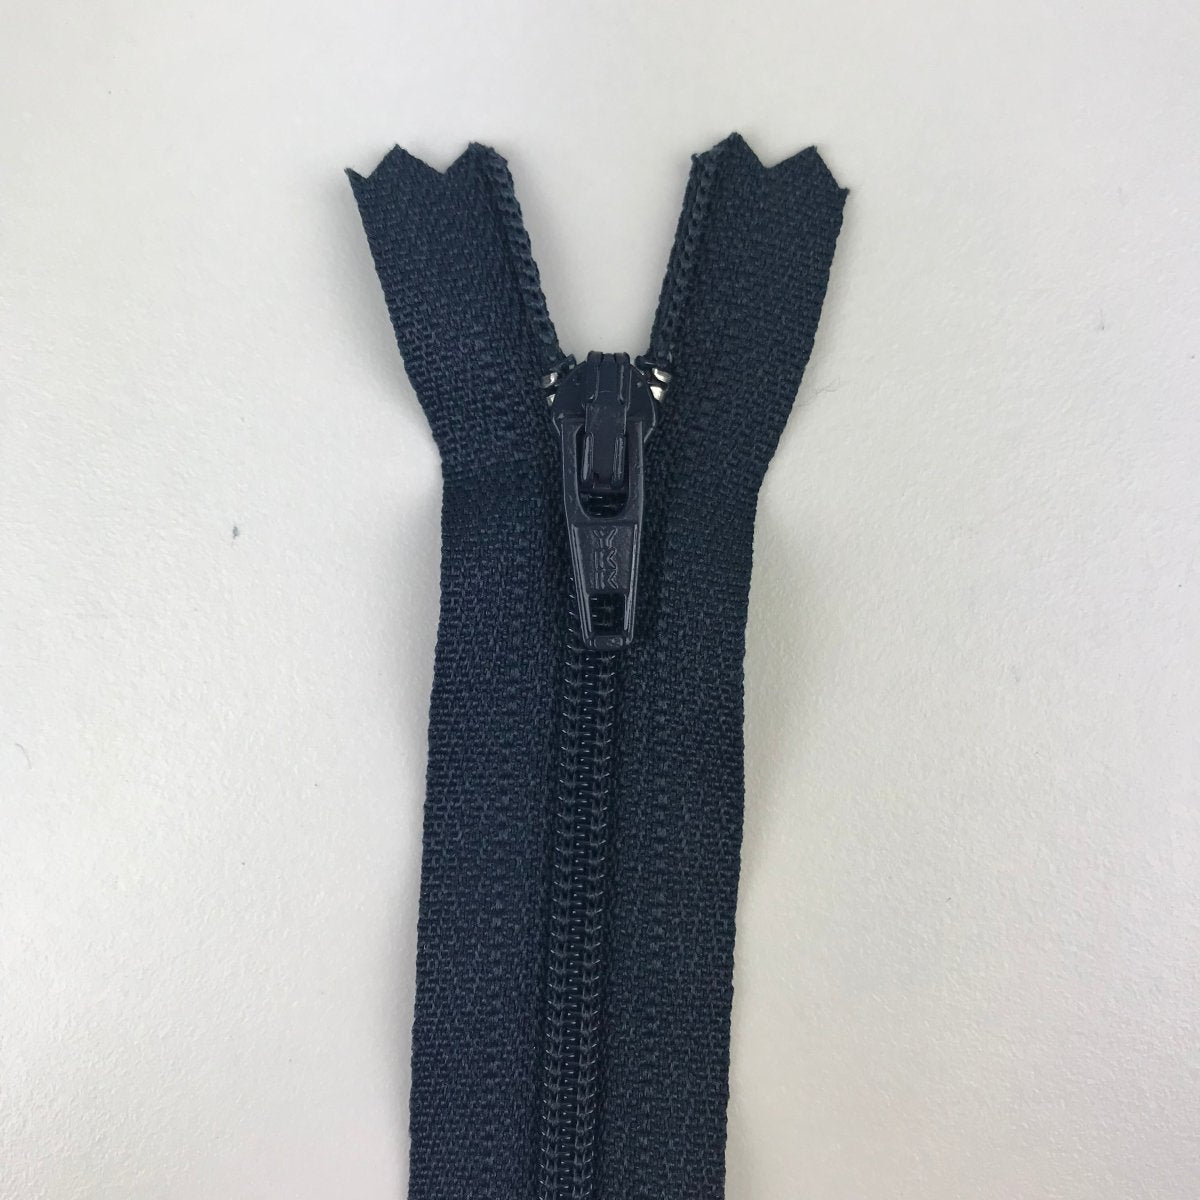 YKK Zipper - Skirt and Dress - 51cm (20") - Sewing Gem